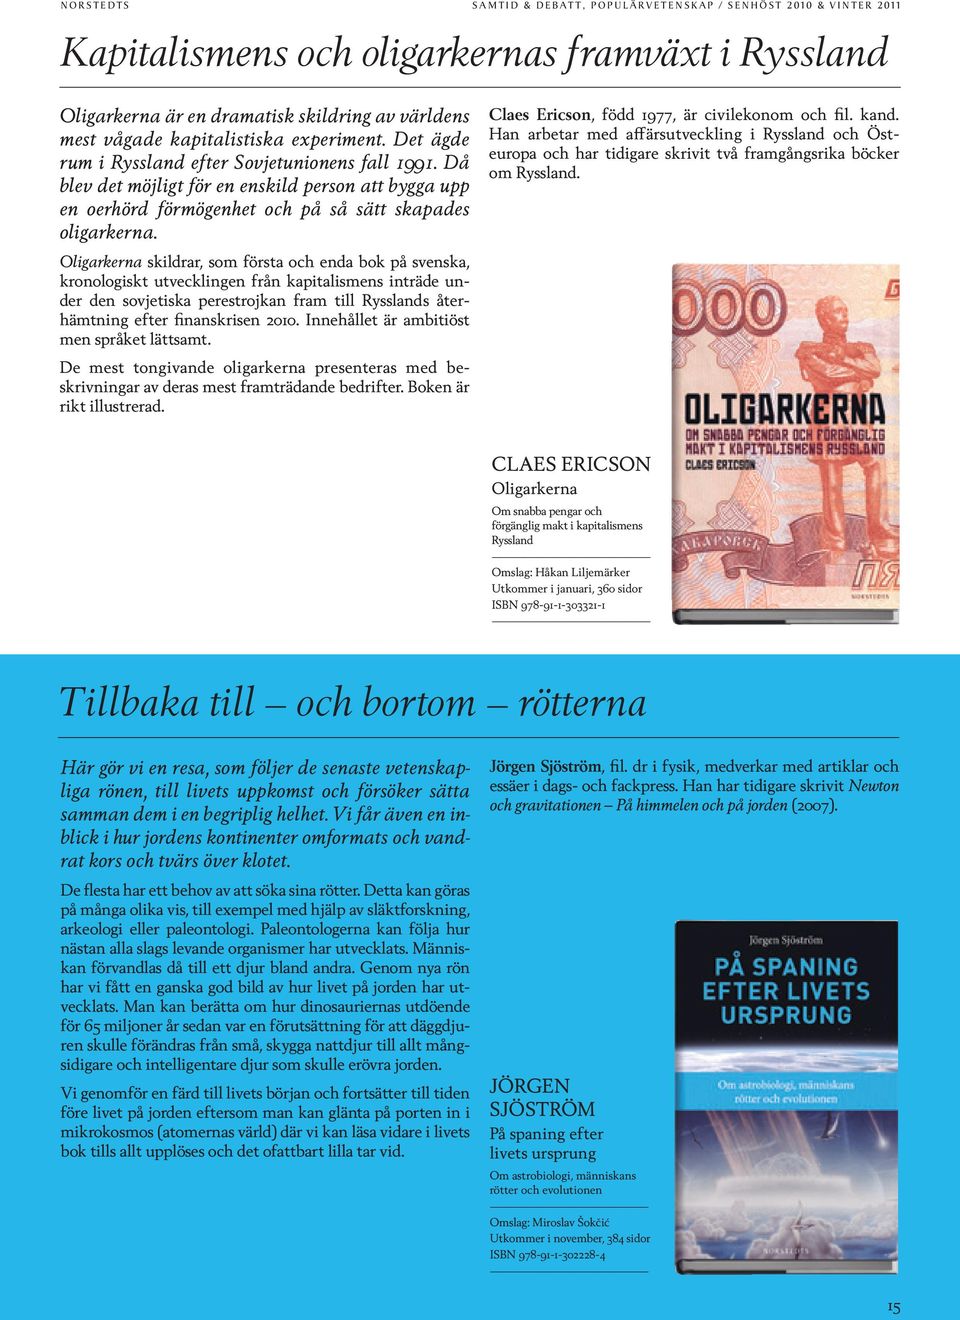 Oligarkerna skildrar, som första och enda bok på svenska, kronologiskt utvecklingen från kapitalismens inträde under den sovjetiska perestrojkan fram till Rysslands återhämtning efter finanskrisen